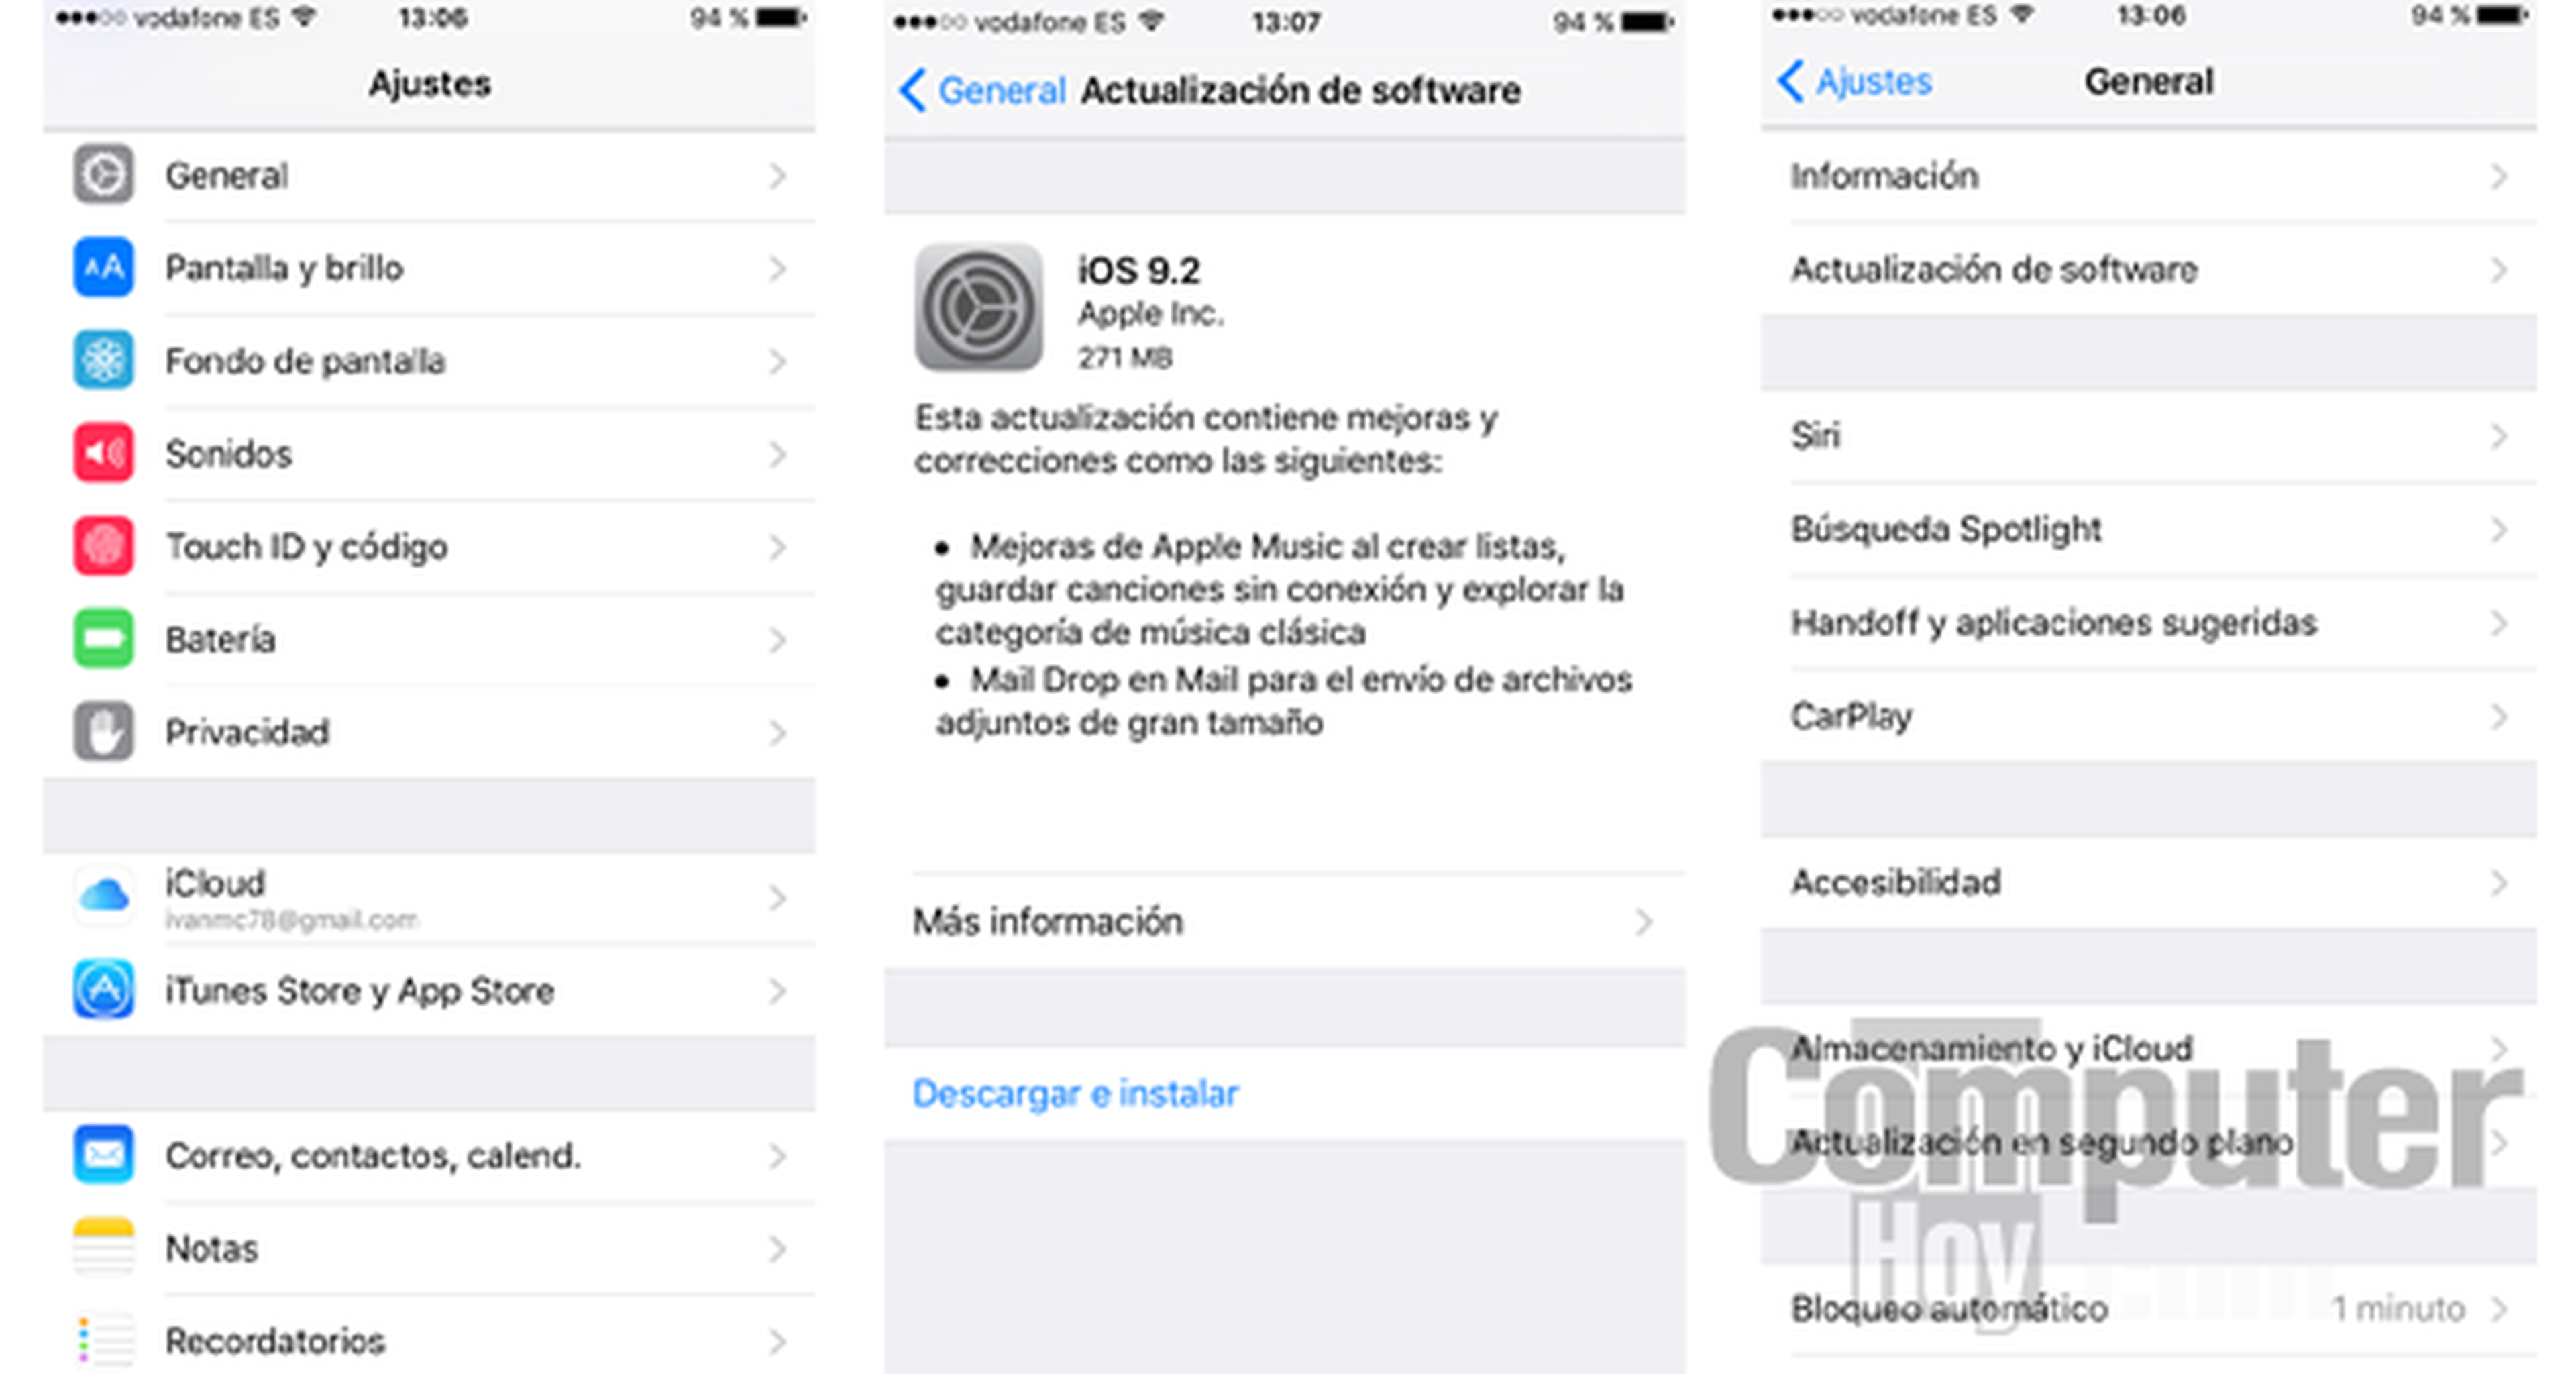 Cómo actualizar iOS 9.2 de Apple